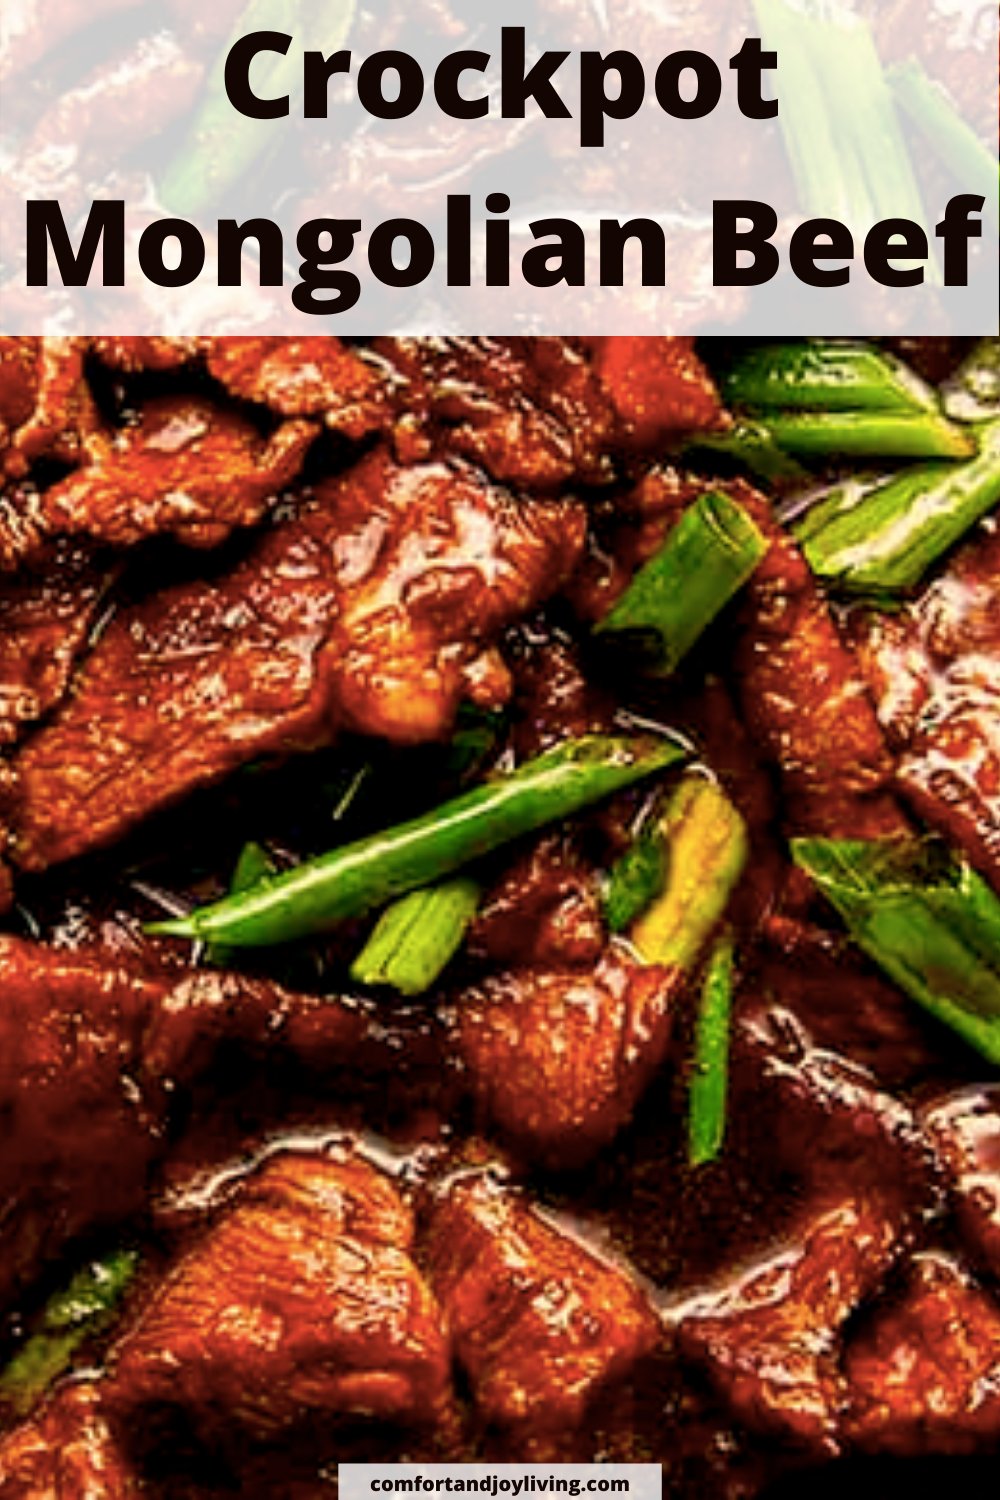 Crckpot-Mongolian-Beef.png